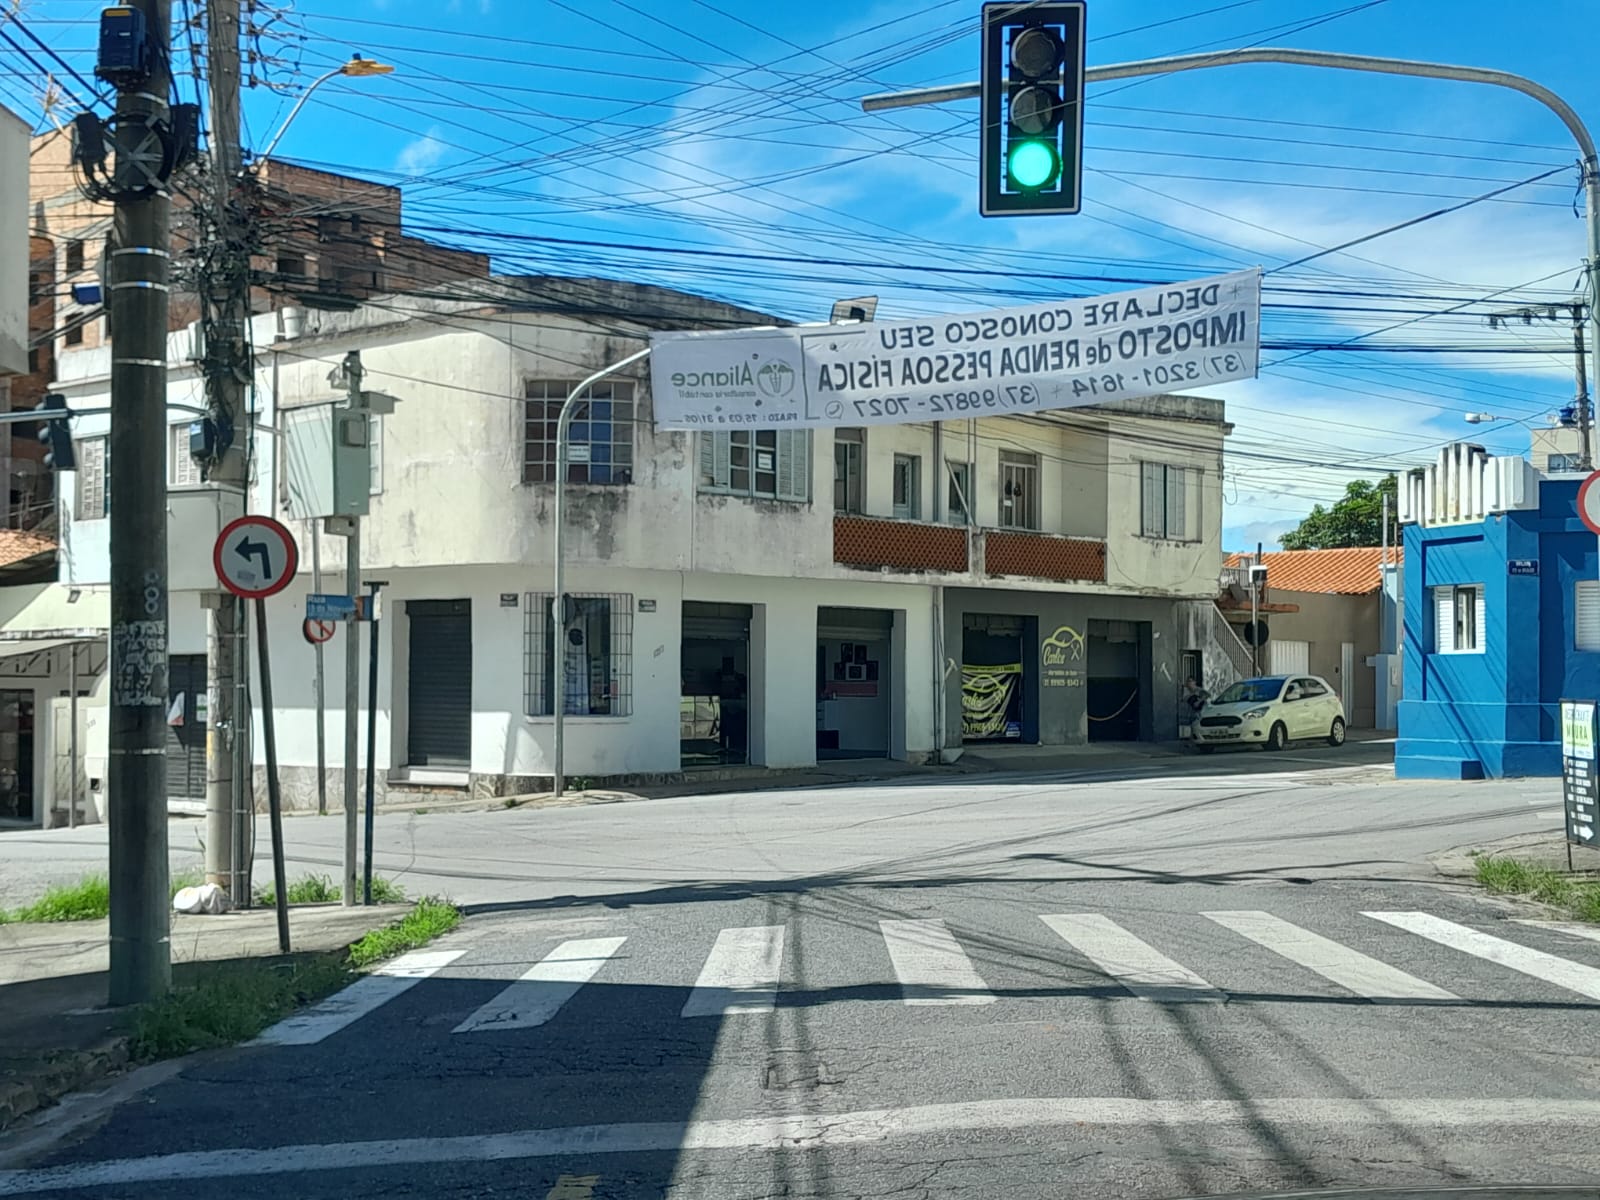 Radares de fiscalização de velocidade em Itaúna começam a autuar no dia 20, anuncia Prefeitura